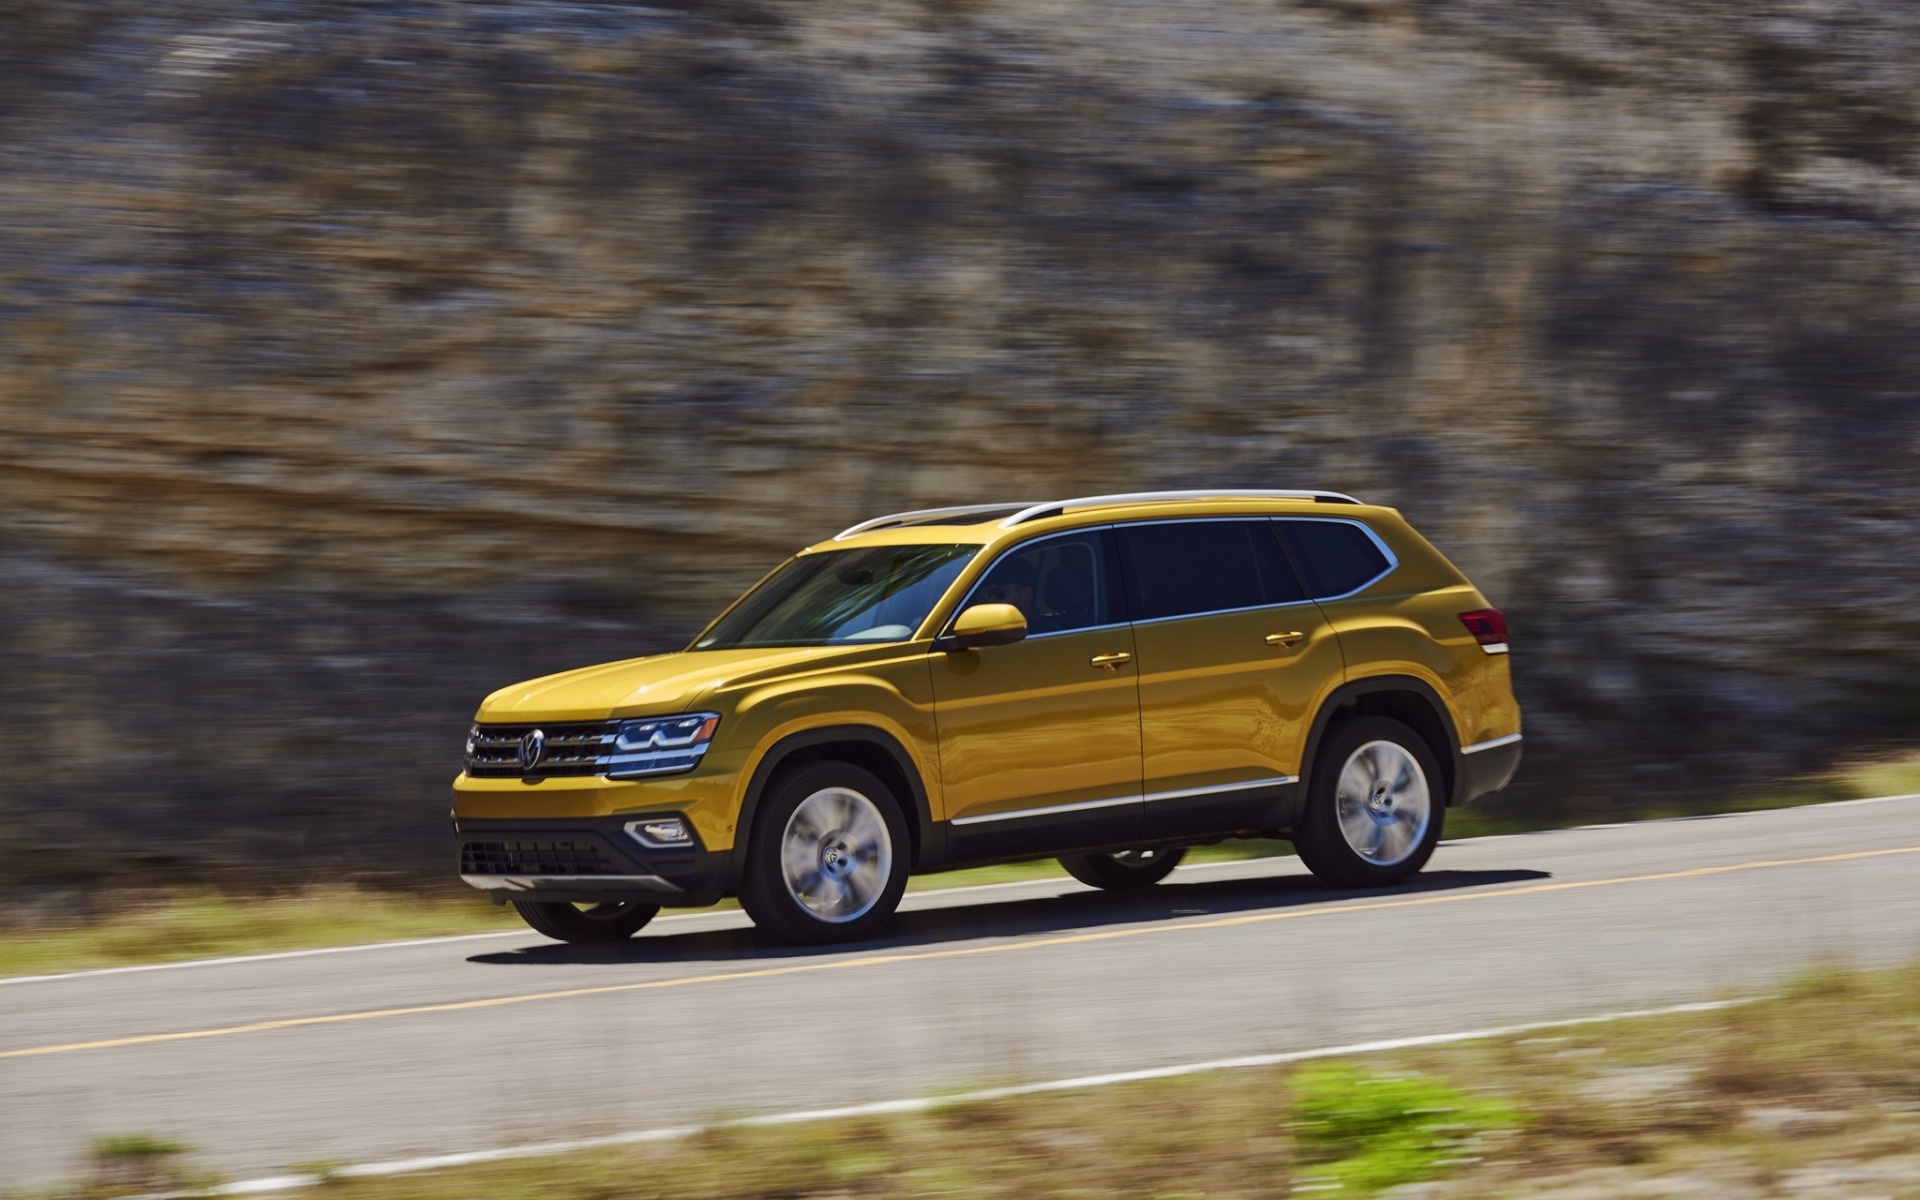 Volkswagen Atlas, 2018 model, Gold exterior view, Speed and power, 1920x1200 HD Desktop